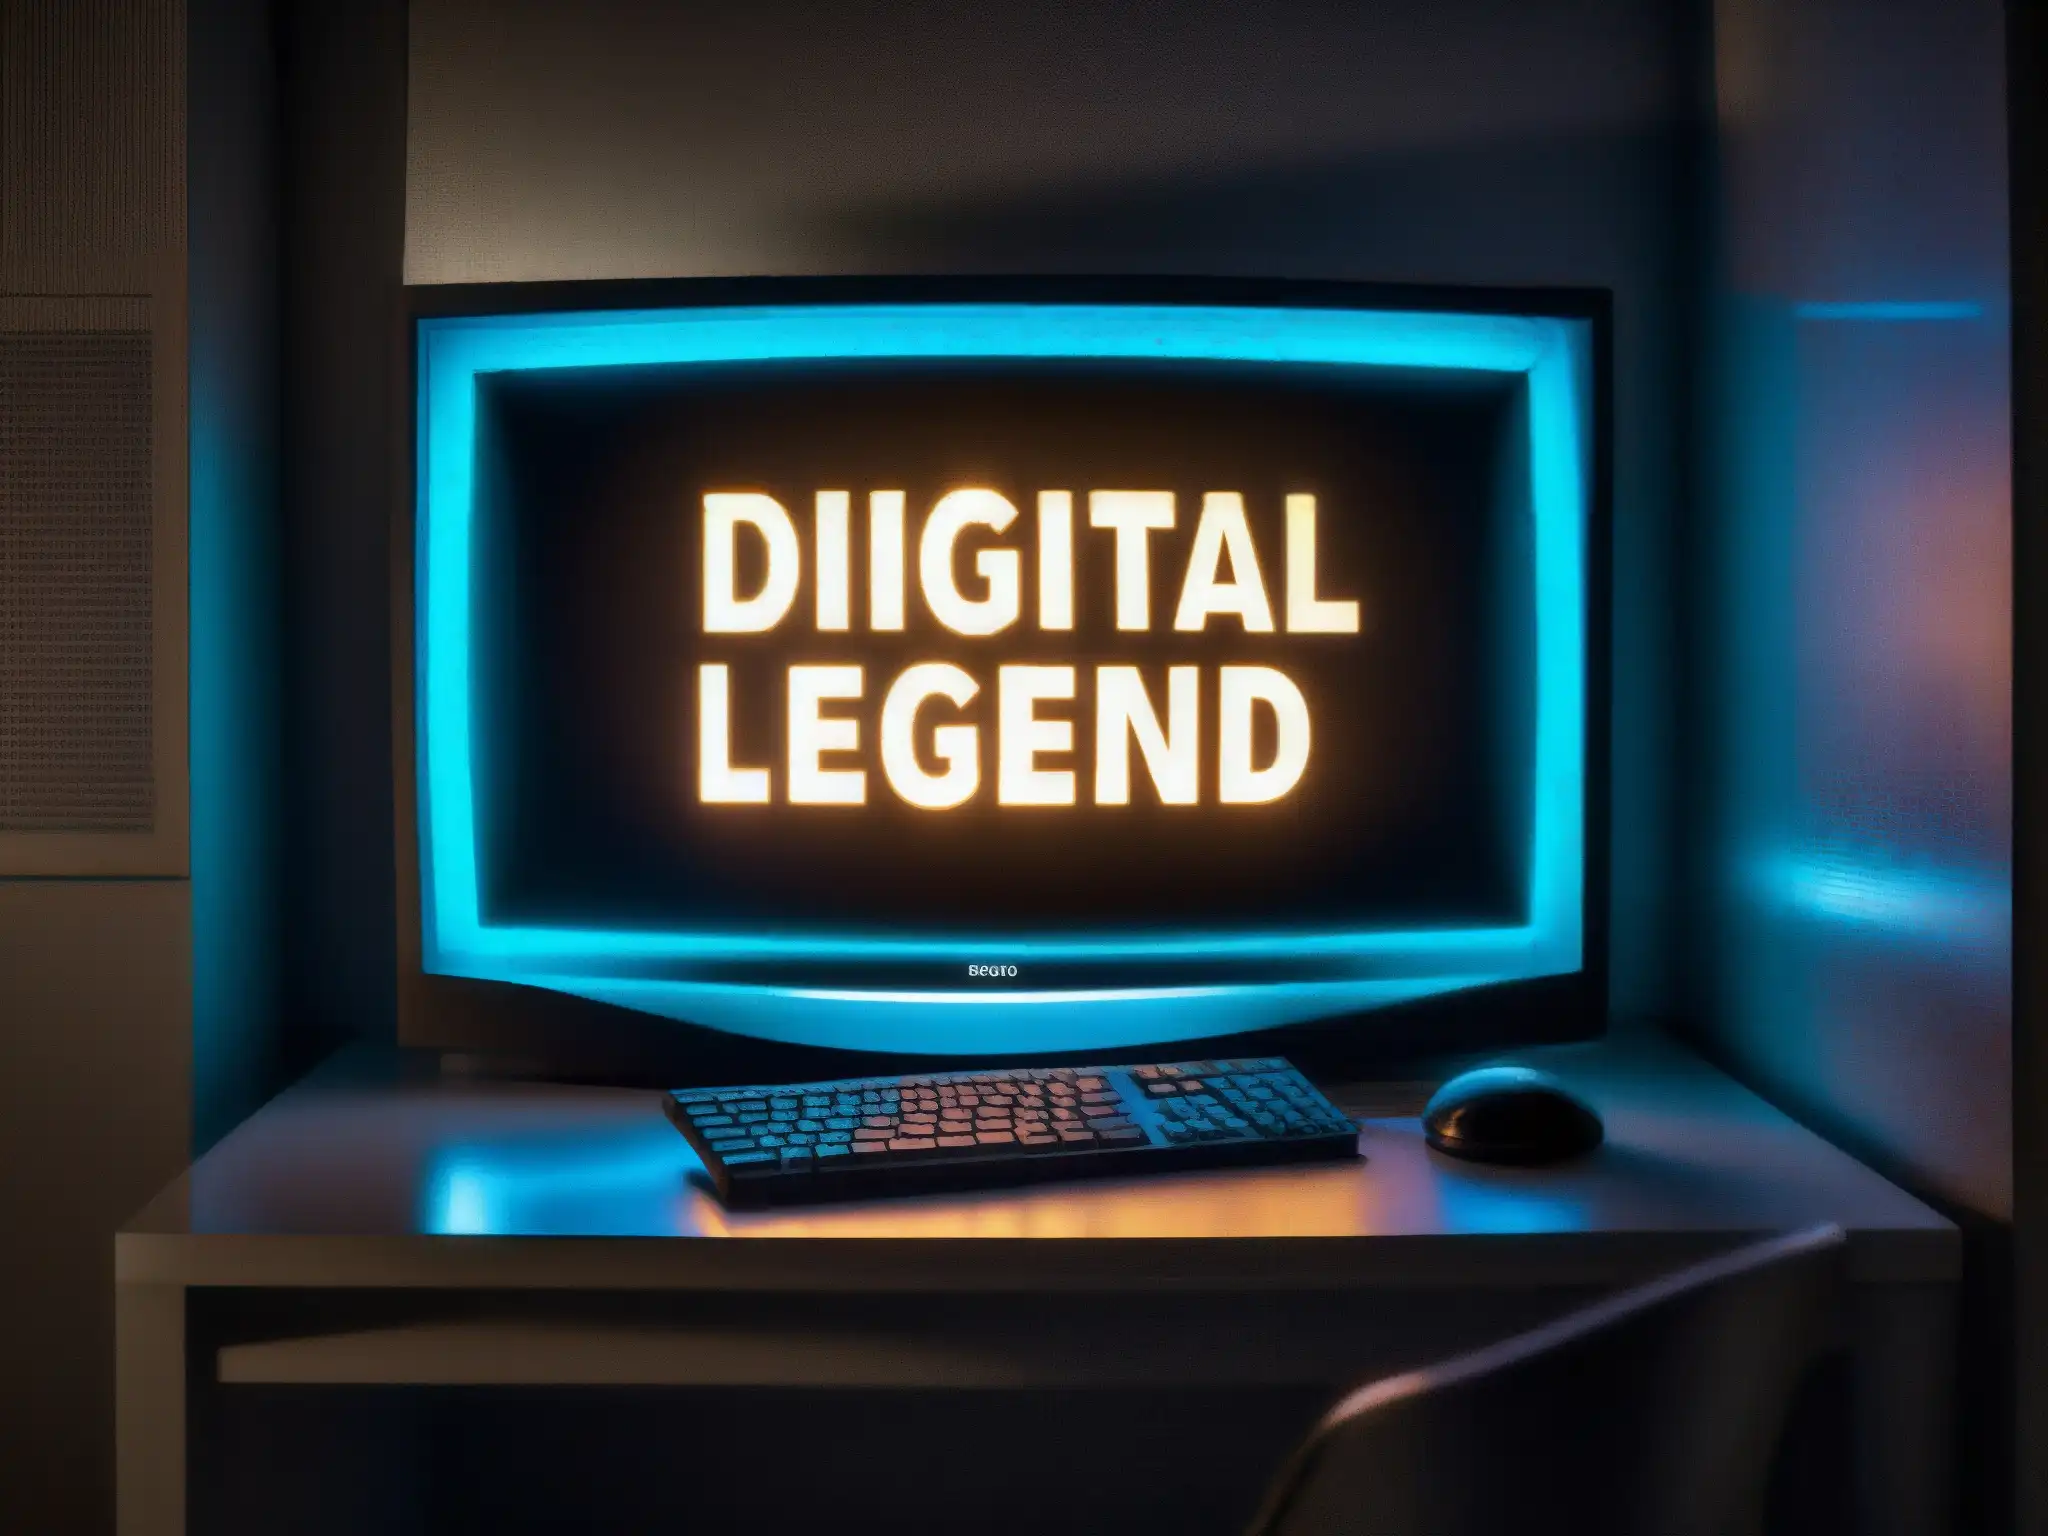 Una pantalla de computadora iluminada en una habitación tenue muestra una inquietante leyenda urbana digital